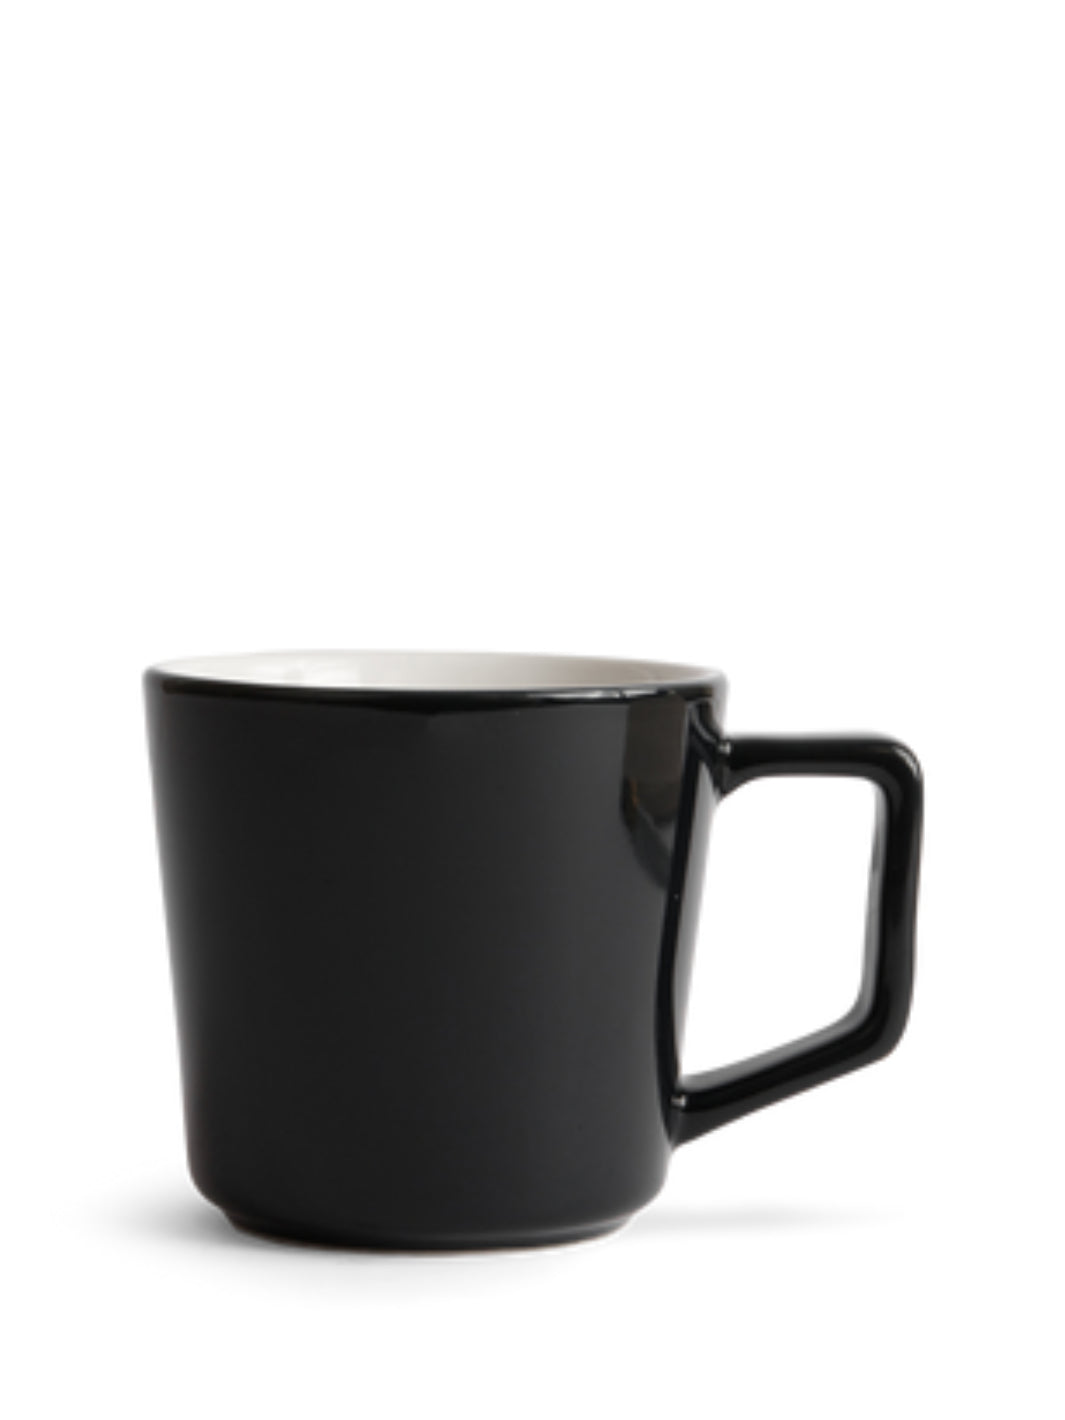 DINERA Mug, dark gray - IKEA